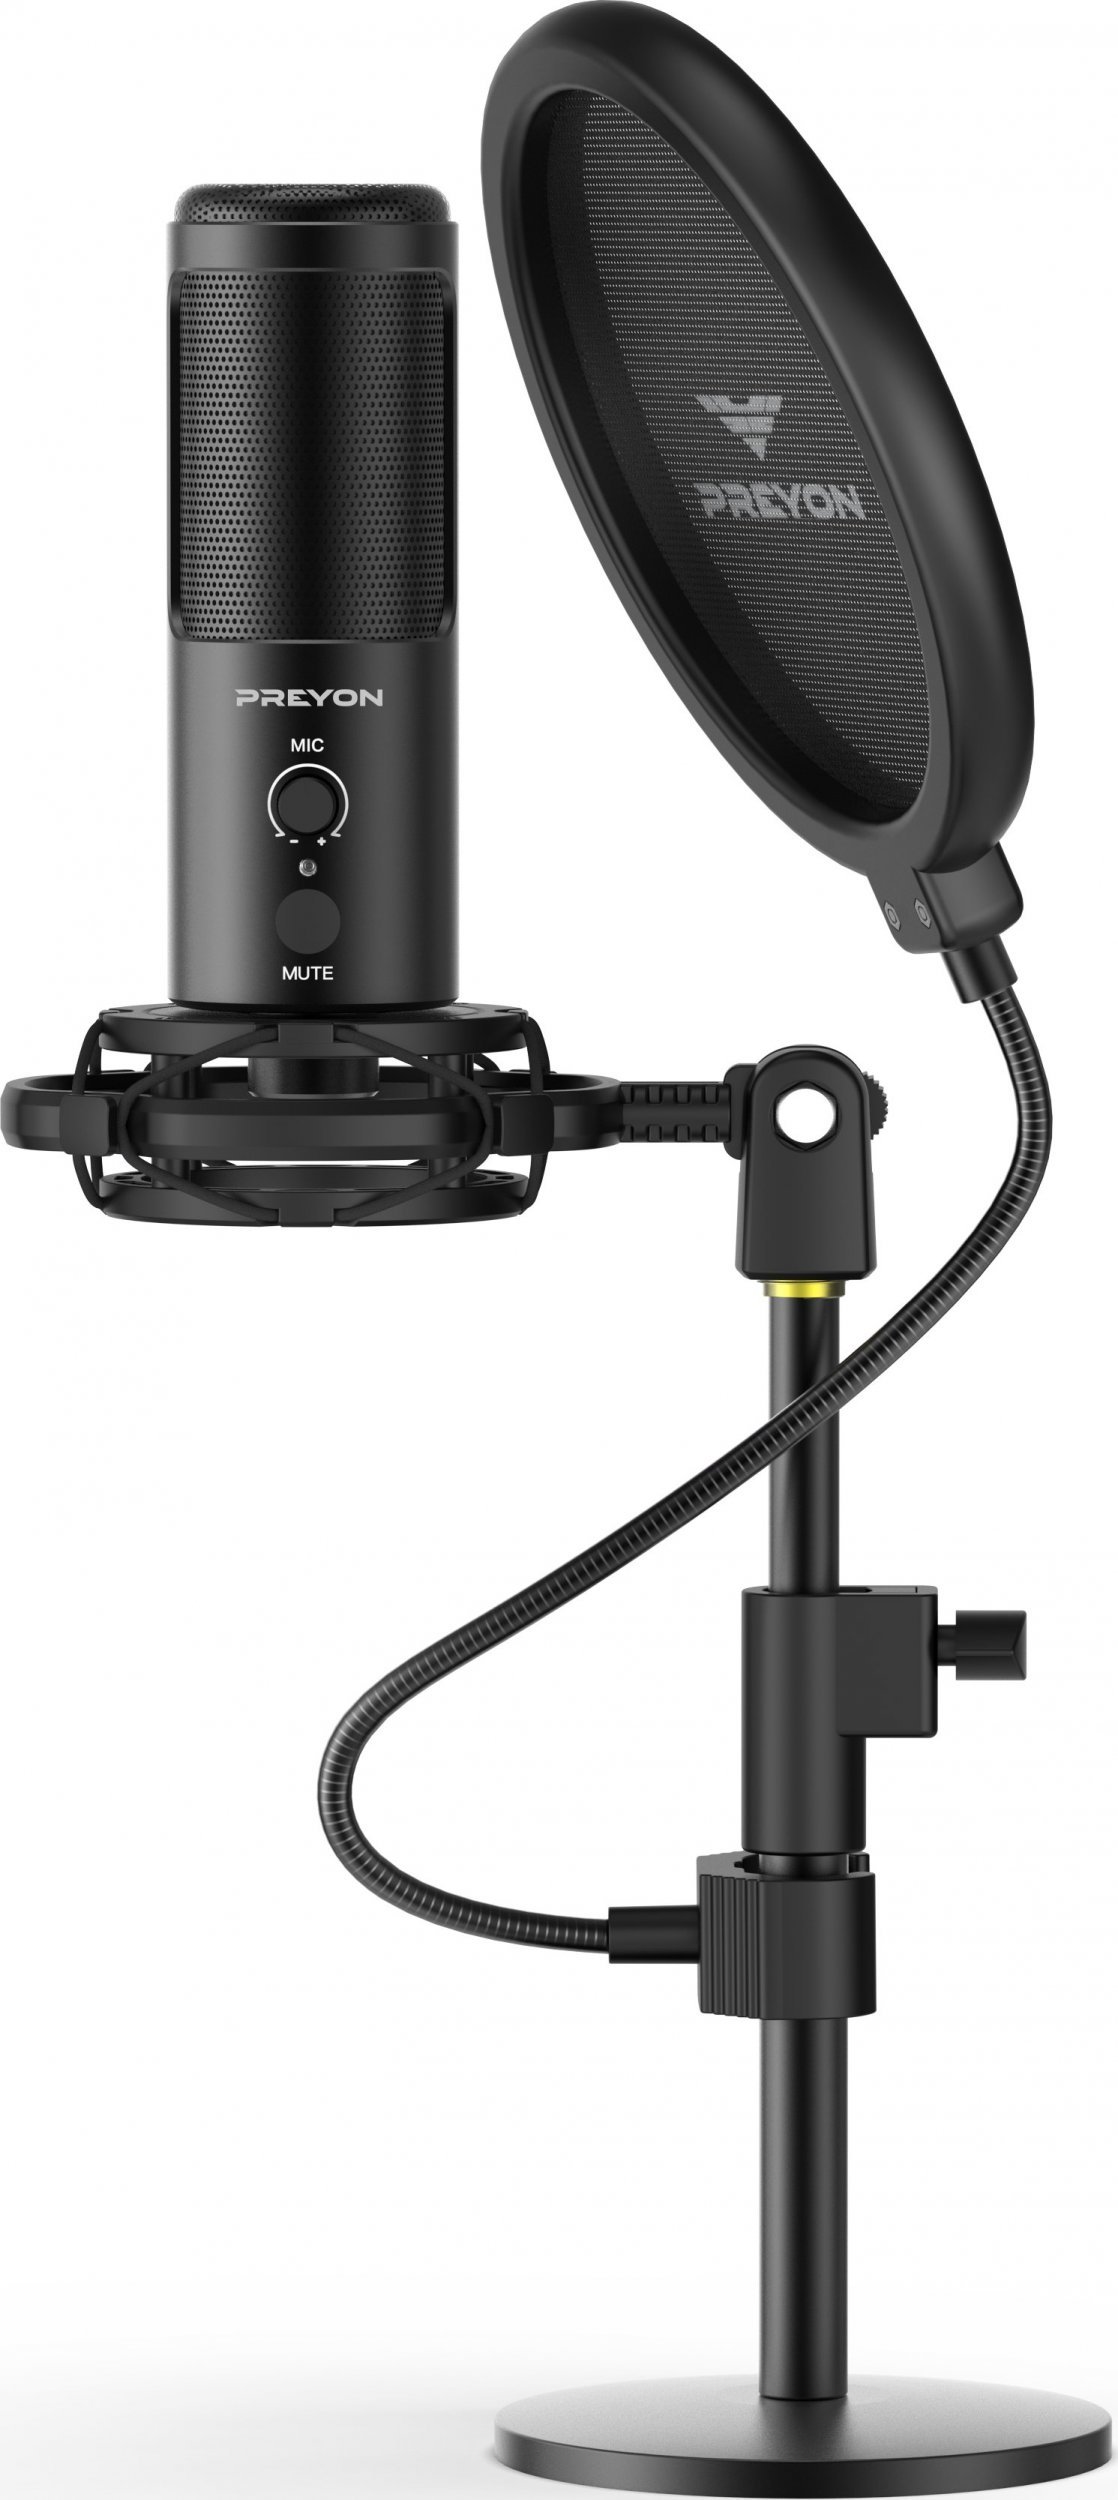 Microfoane - Microfon USB Buzzard Scream PREYON PBS43B, capacitiv, USB, Negru